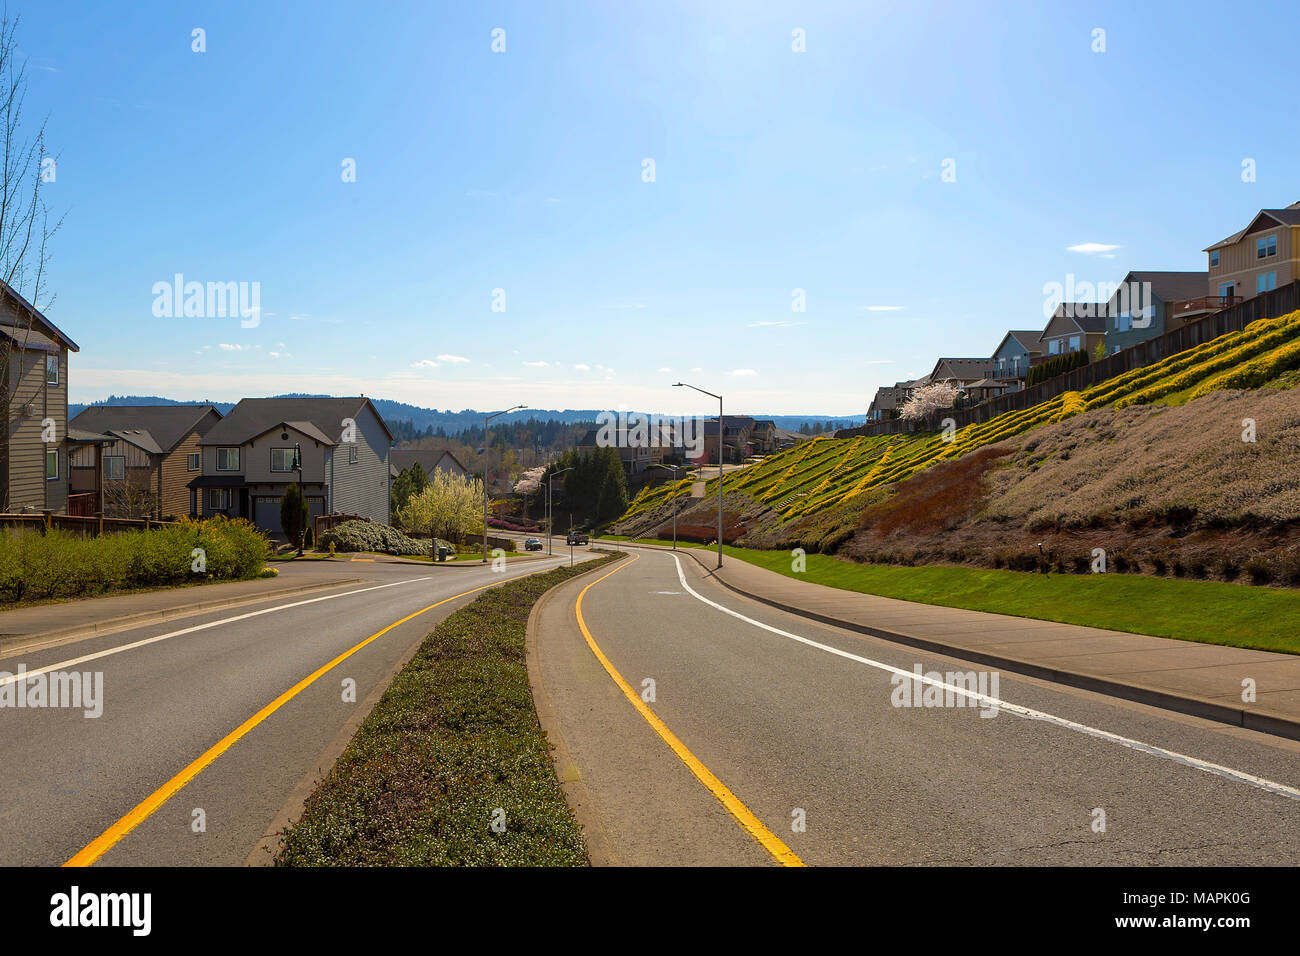 Intorno a due vie street in Nord America zona suburbana su un cielo blu giornata di sole Foto Stock